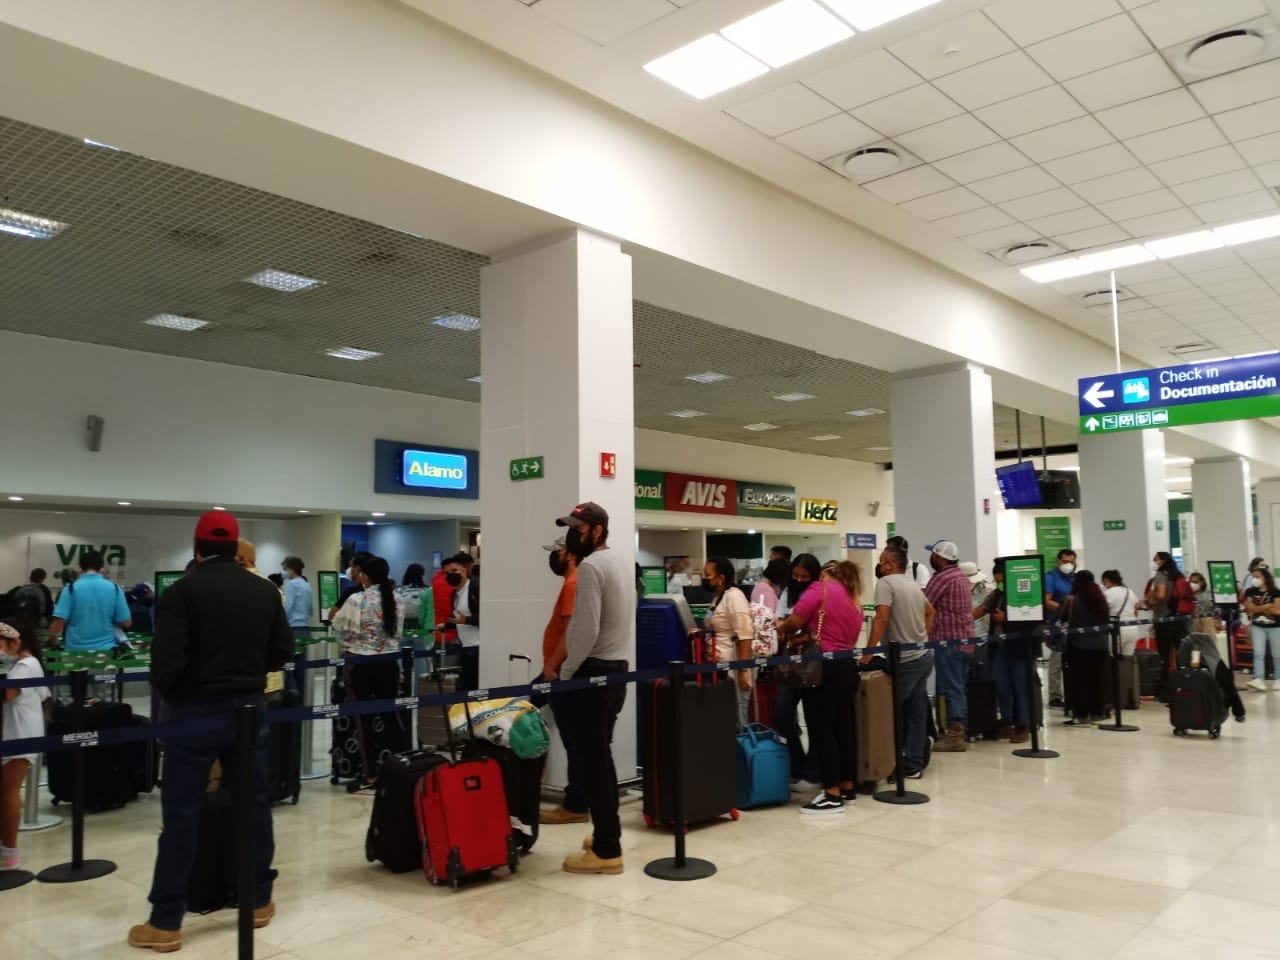 El Aeropuerto Internacional de Mérida registró filas en el módulo de VivaAerobus para realizar la documentación del equipaje tras la llegada adelantada del vuelo procedente de Monterrey